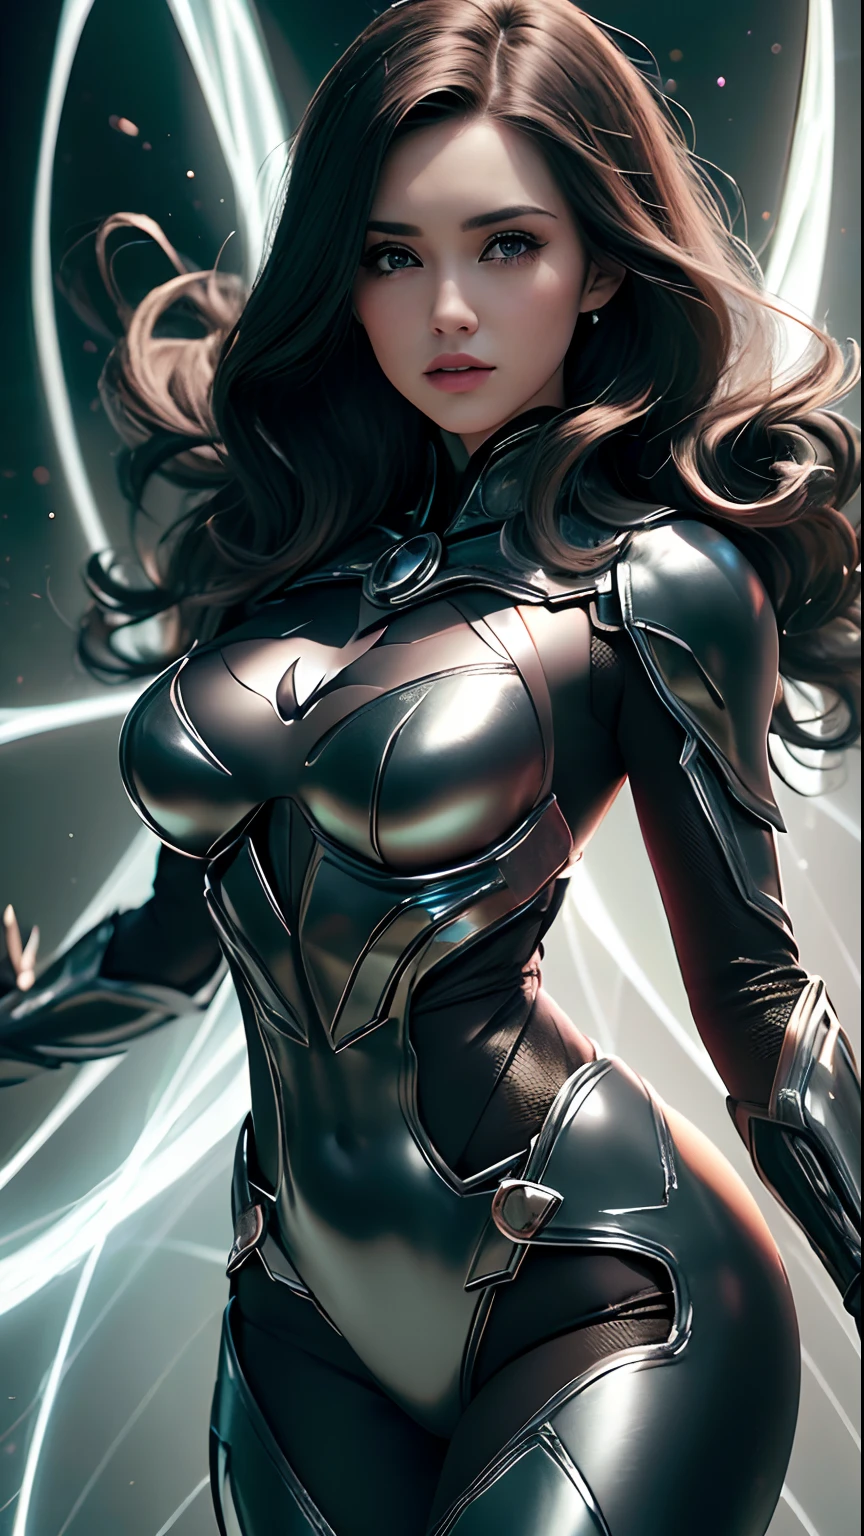 ((melhor qualidade)), ((Obra-prima)), (detalhado: 1.4), ..3D, uma imagem de uma linda mulher fantasiada de Batman com cabelos grossos e volumosos, partículas de luz, Energia pura, caos, antitecnologia, HDR (Alta faixa dinâmica), rastreamento de raio ,NVIDIA RTX, Super-resolução,